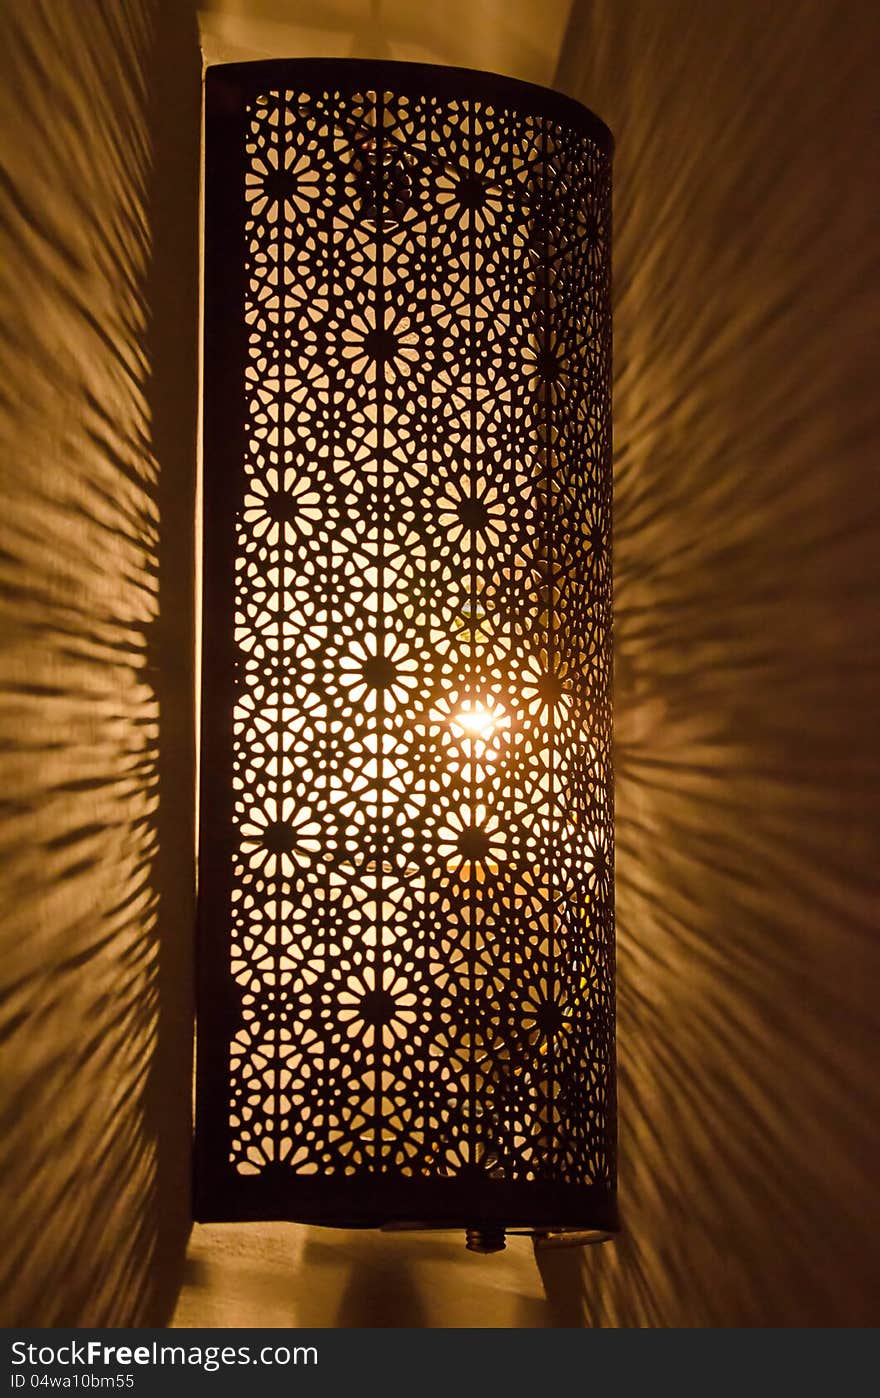 Ornate metal lamp glowing on wall. Ornate metal lamp glowing on wall